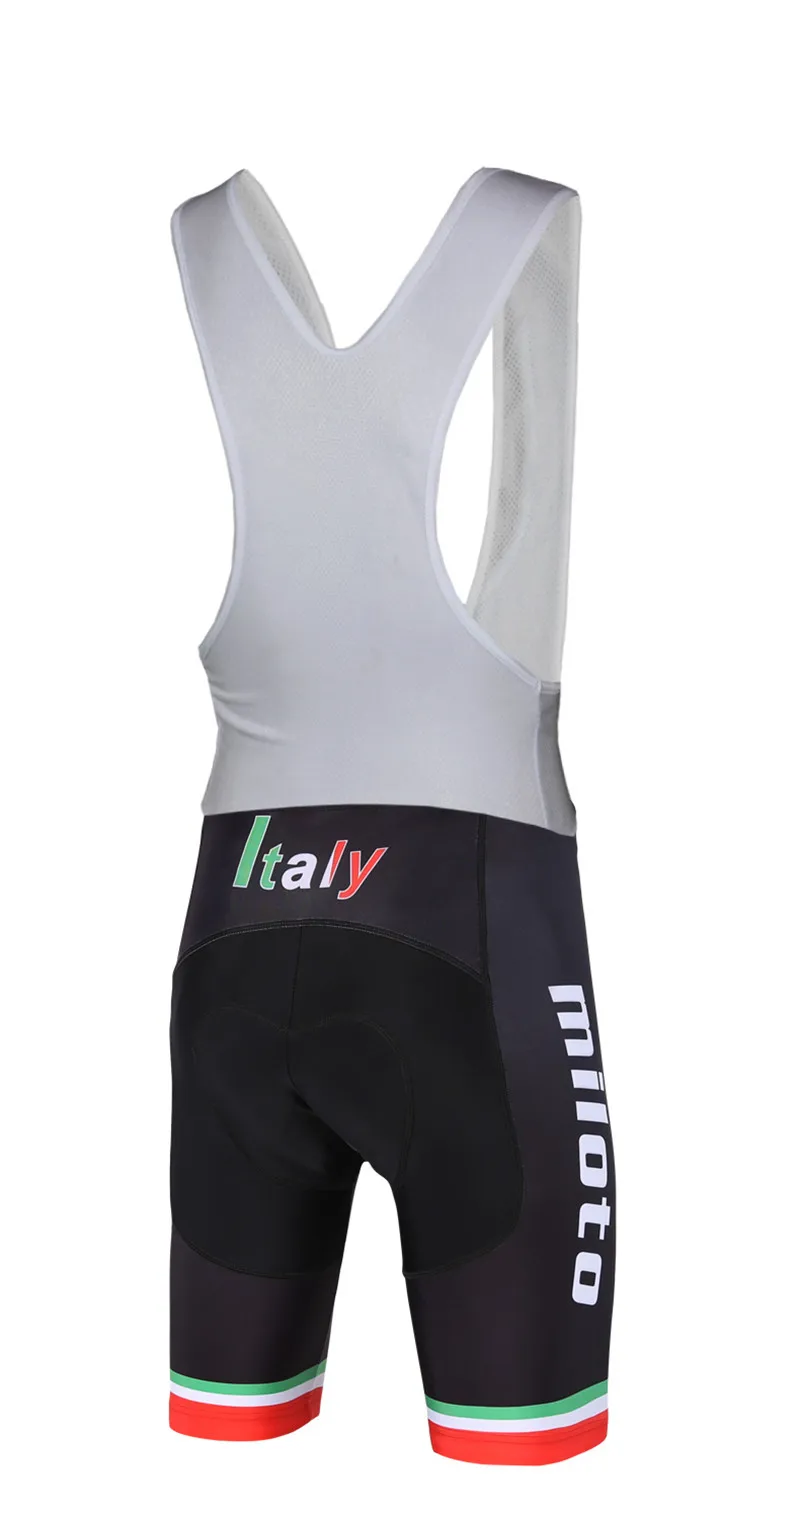 Miloto Италия Coolmax гелевая подкладка велосипедные шорты для велосипедистов MTB дорожный велосипед велотрусы Ropa Ciclismo лосины одежда для велоспорта